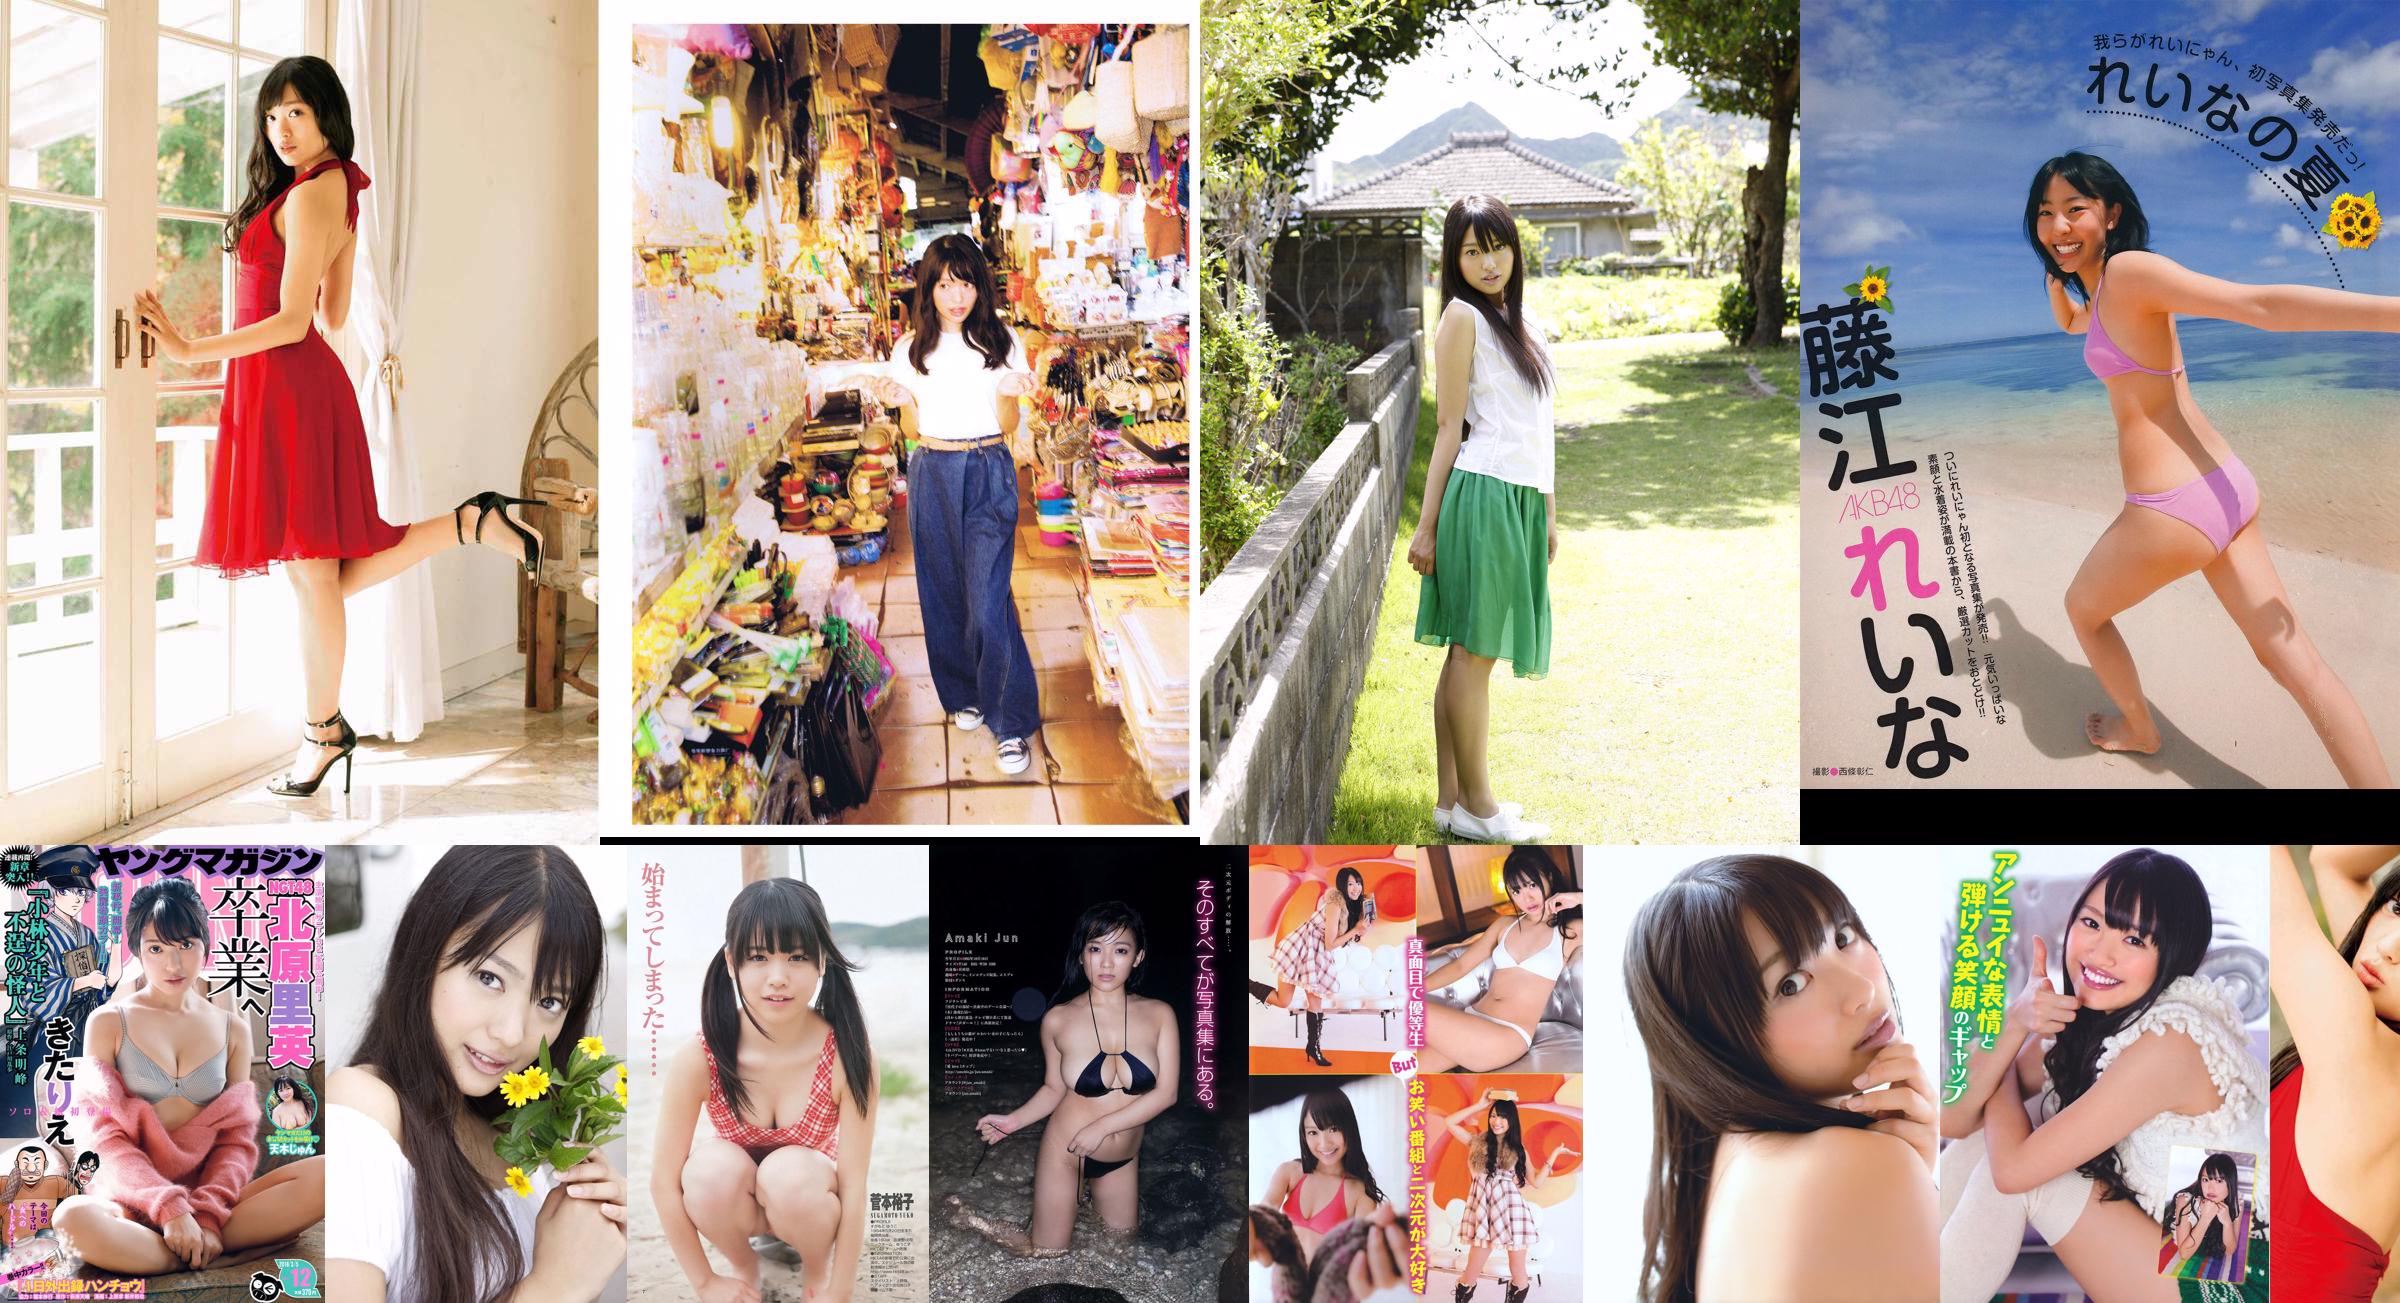 [EX Taishu] Rie Kitahara Serina KONAN Yumi Fujikoso 2011 No.08 Photo No.deff61 Pagina 24